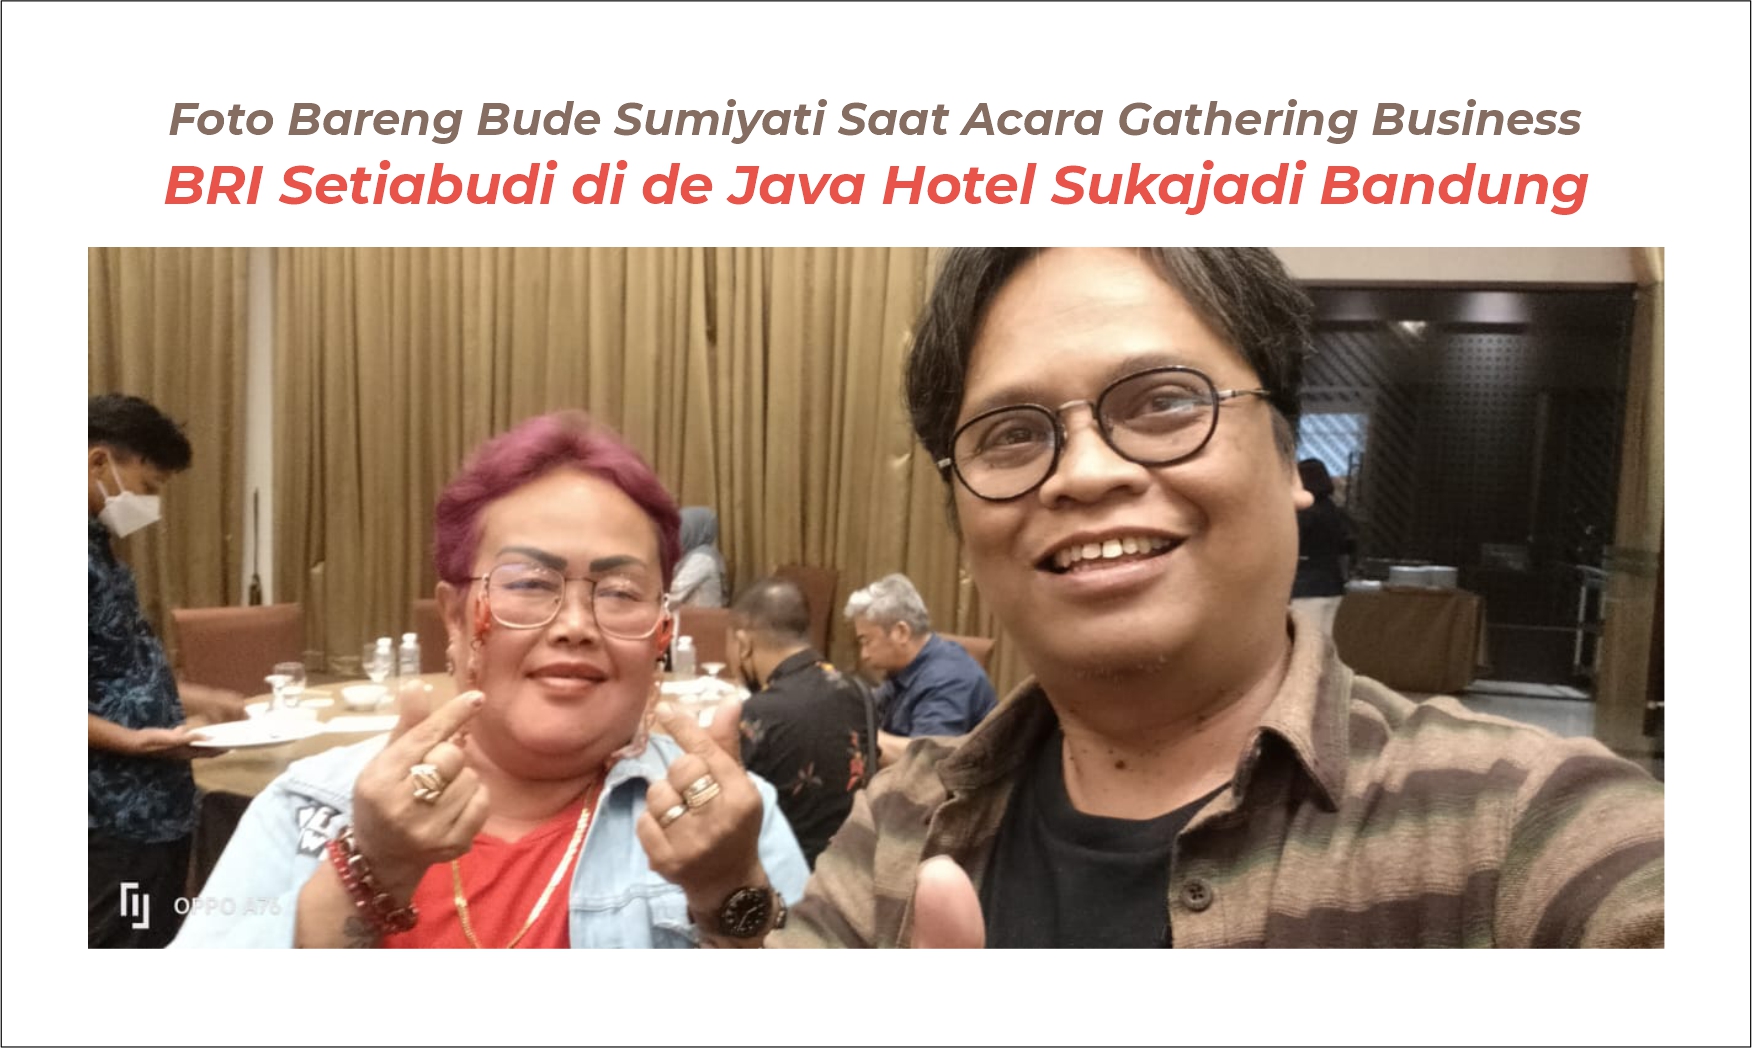 Foto Bareng Bude Sumiyati Saat Acara Gathering Business BRI Setiabudi di de Java Hotel Sukajadi Bandung